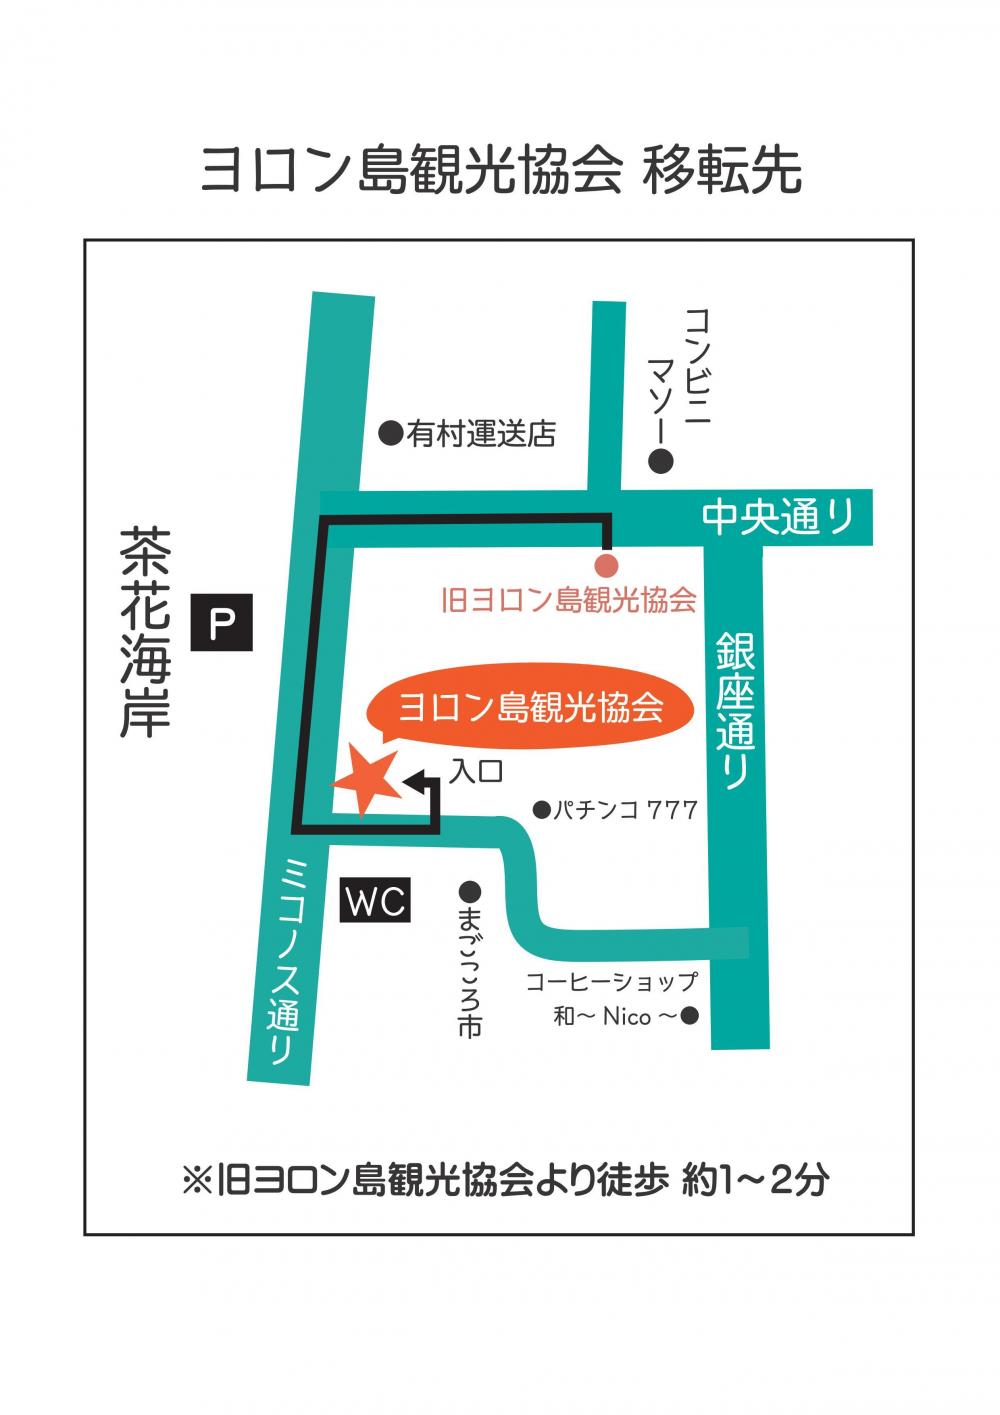 ヨロン島観光協会新事務所地図-2のコピー_01.jpg